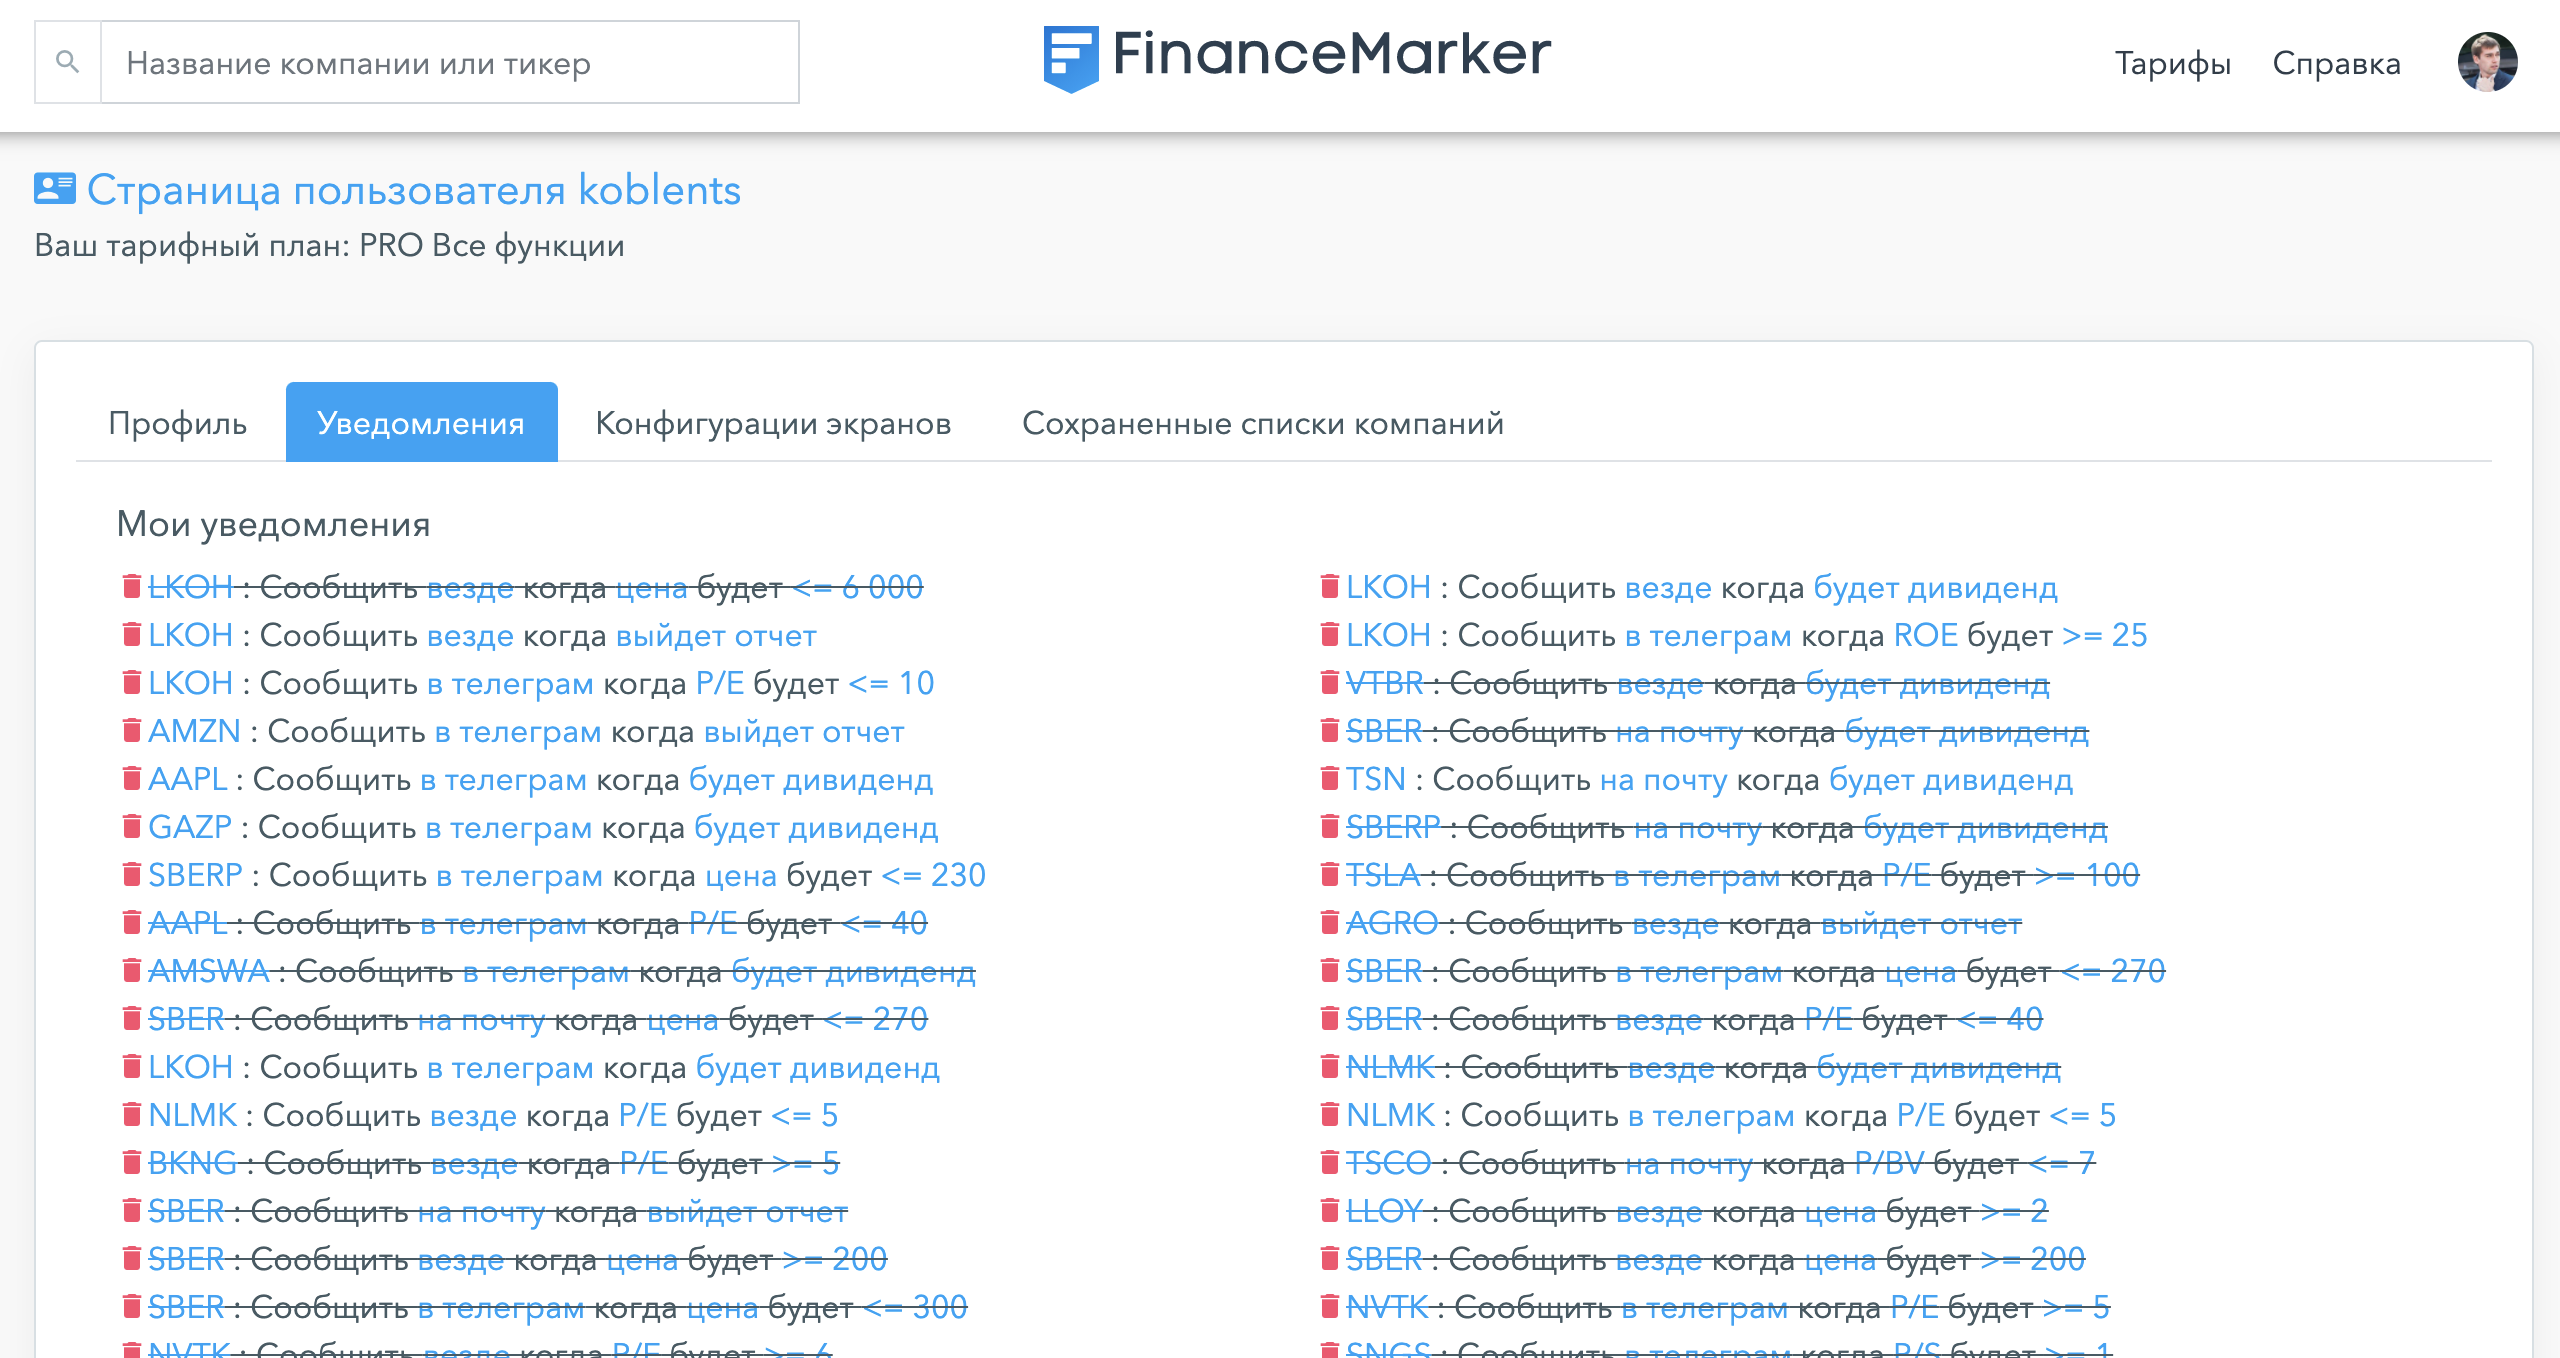 Список всех уведомлений в профиле пользователя на FinanceMarker.ru